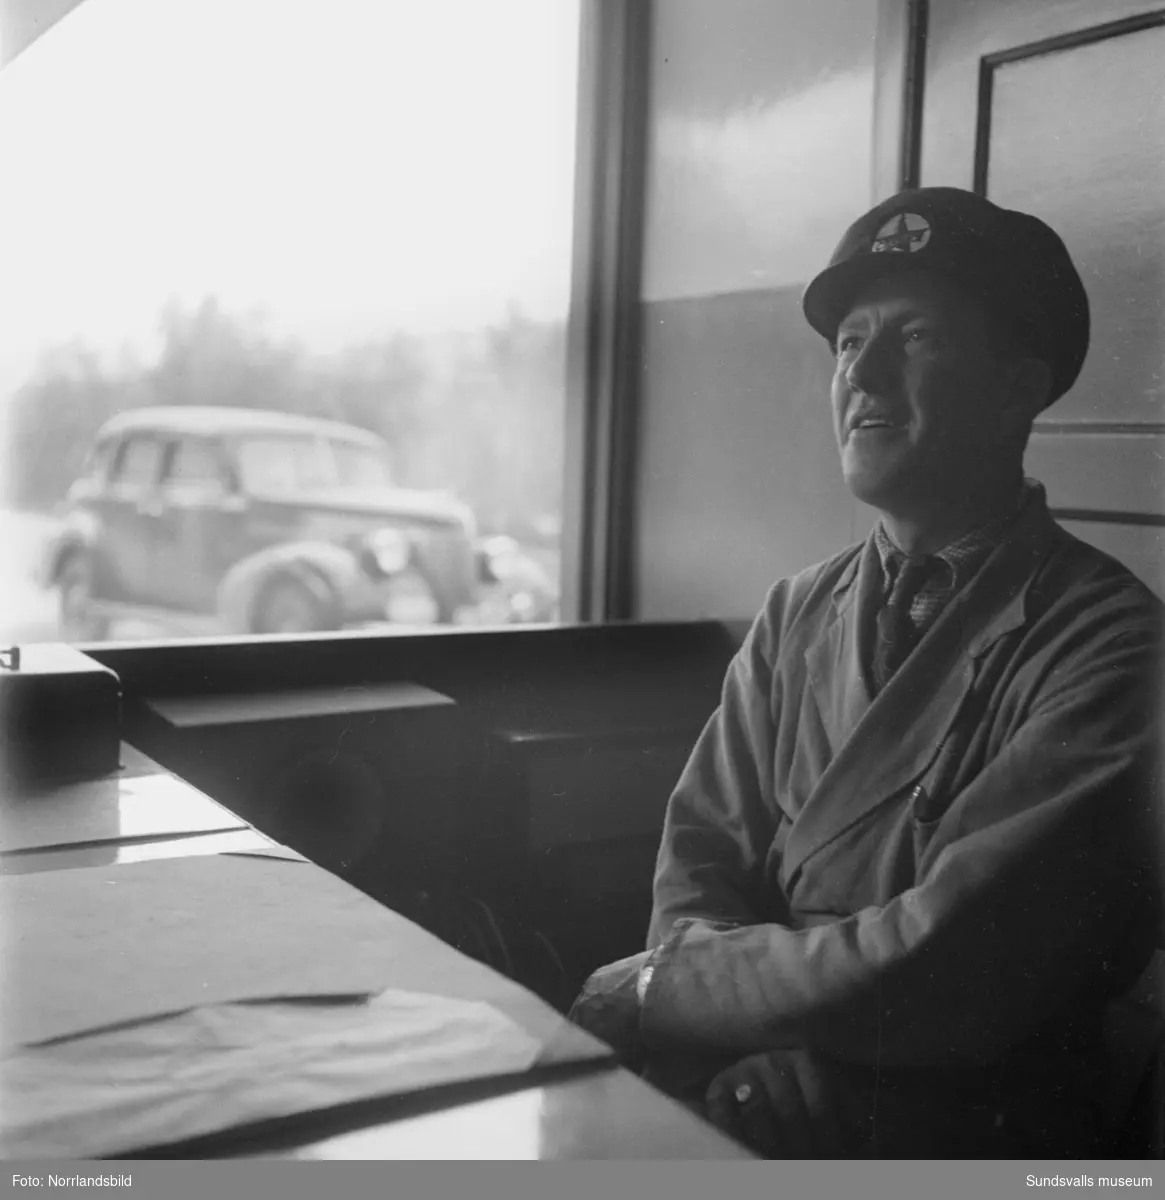 Allan Sundbom, "Mack-Allan", innehavare av Caltex bensinstation på Östermalm. Sundbom var även en lokal profil inom Sundsvalls idrottsliv, framför allt knuten till GIF Sundsvall.